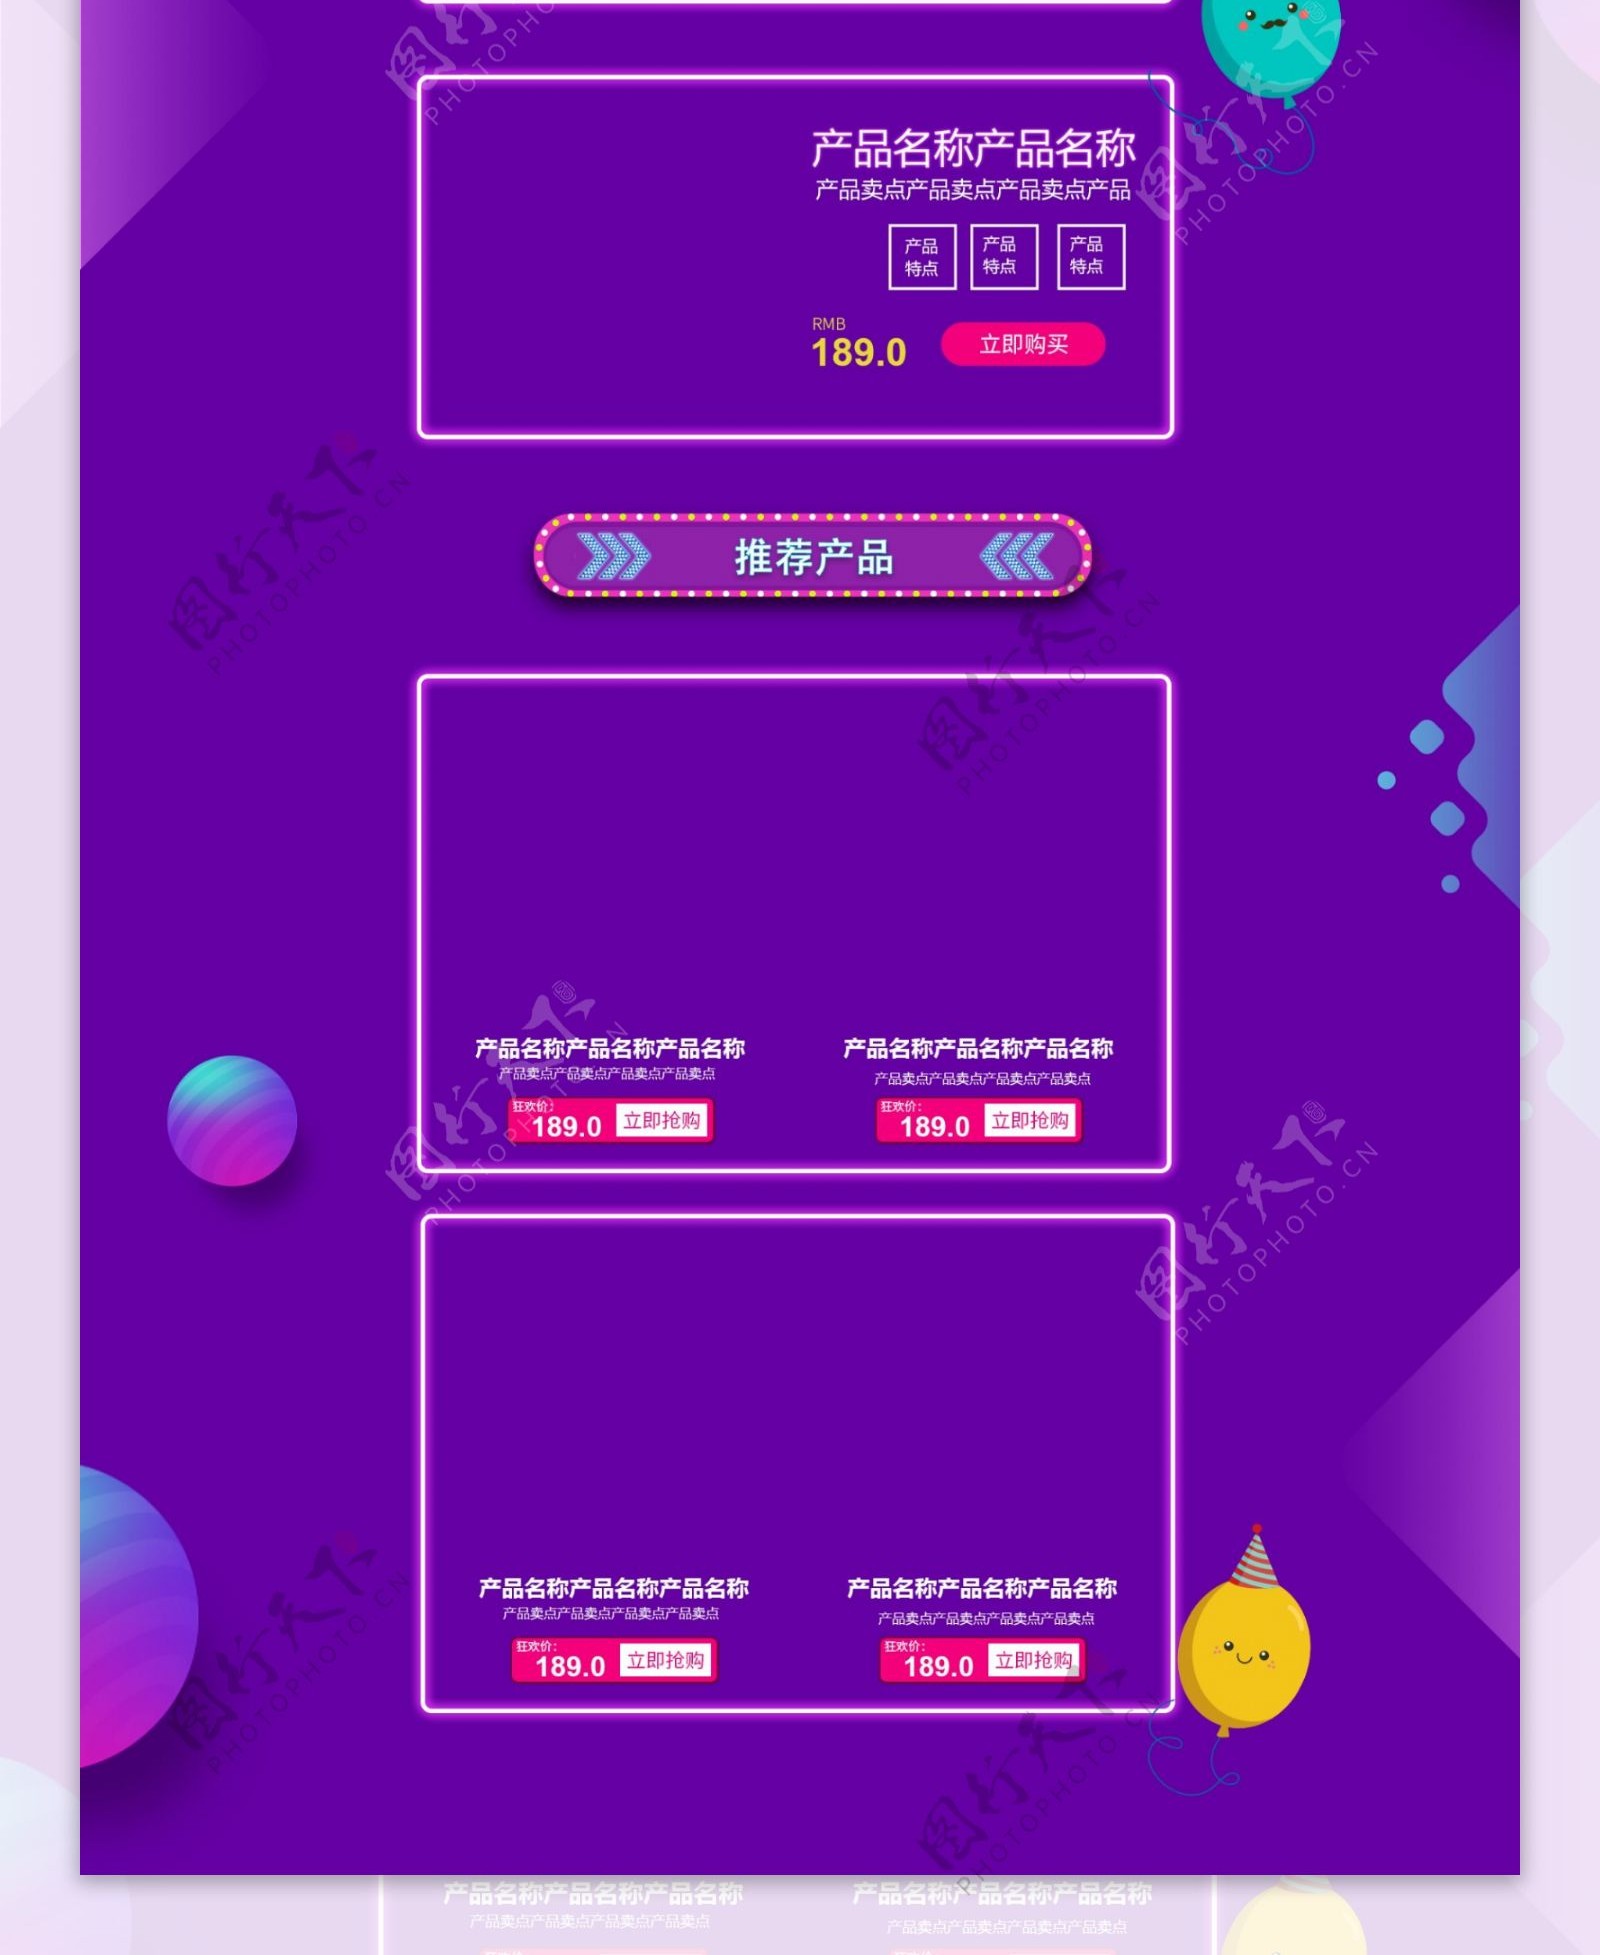 天猫国际愚人节紫色电商首页模板